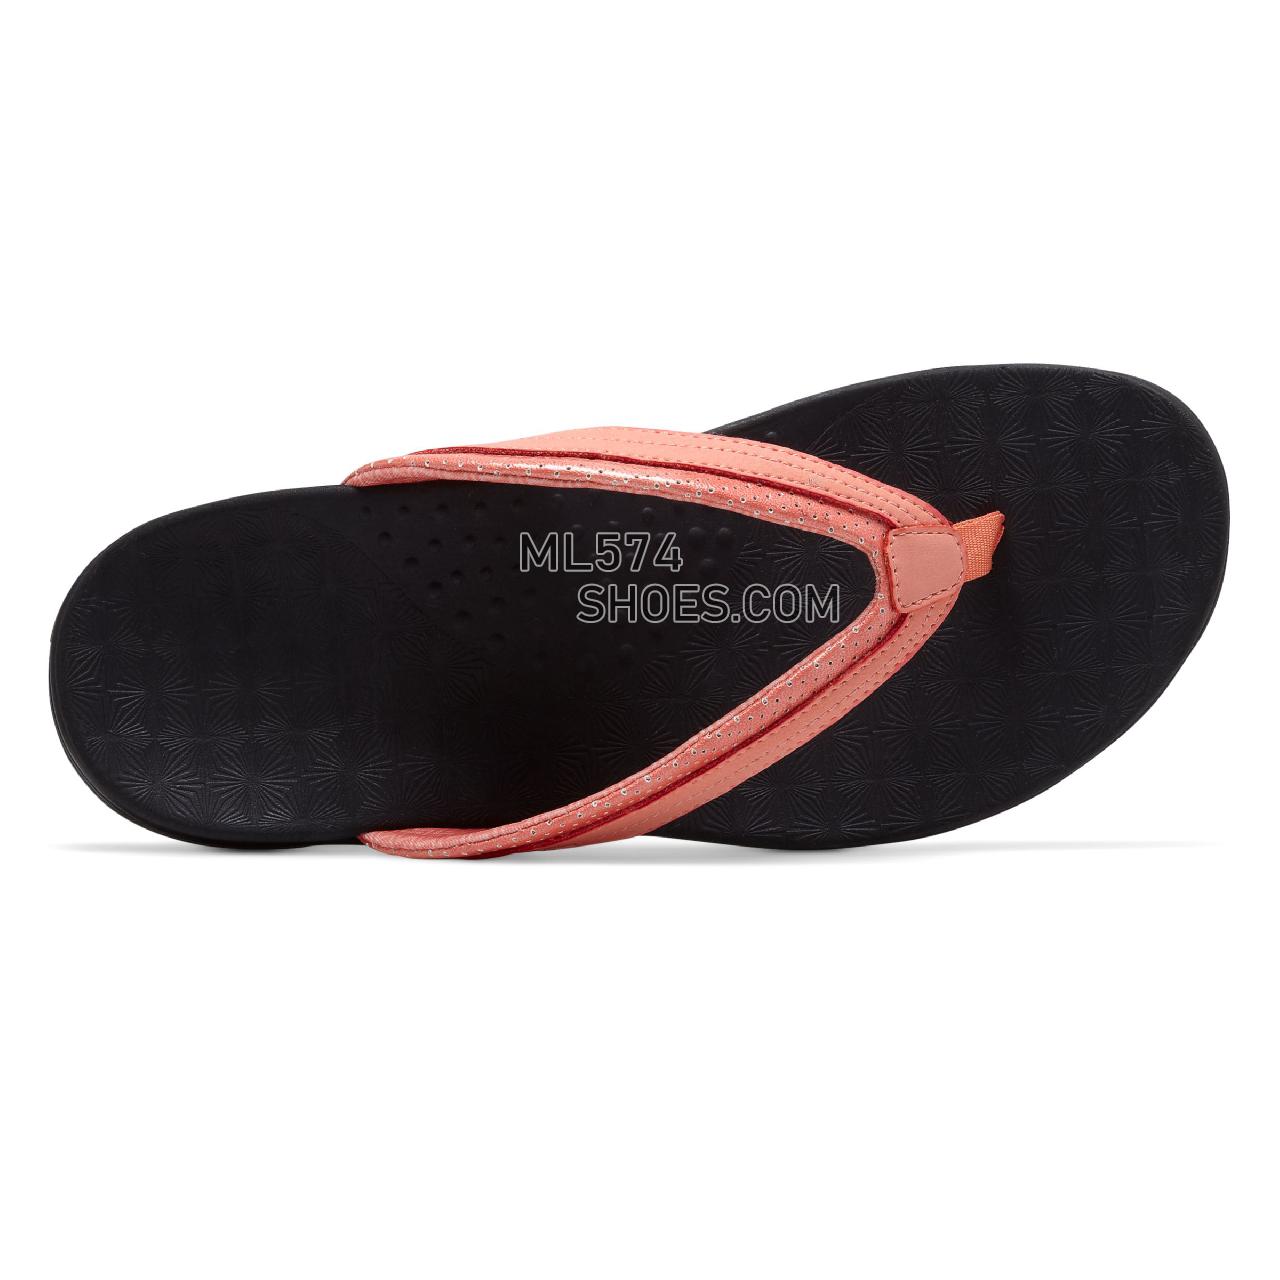 New Balance Hayden Thong - Women's 6101 - Sandals Coral - WR6101CRL